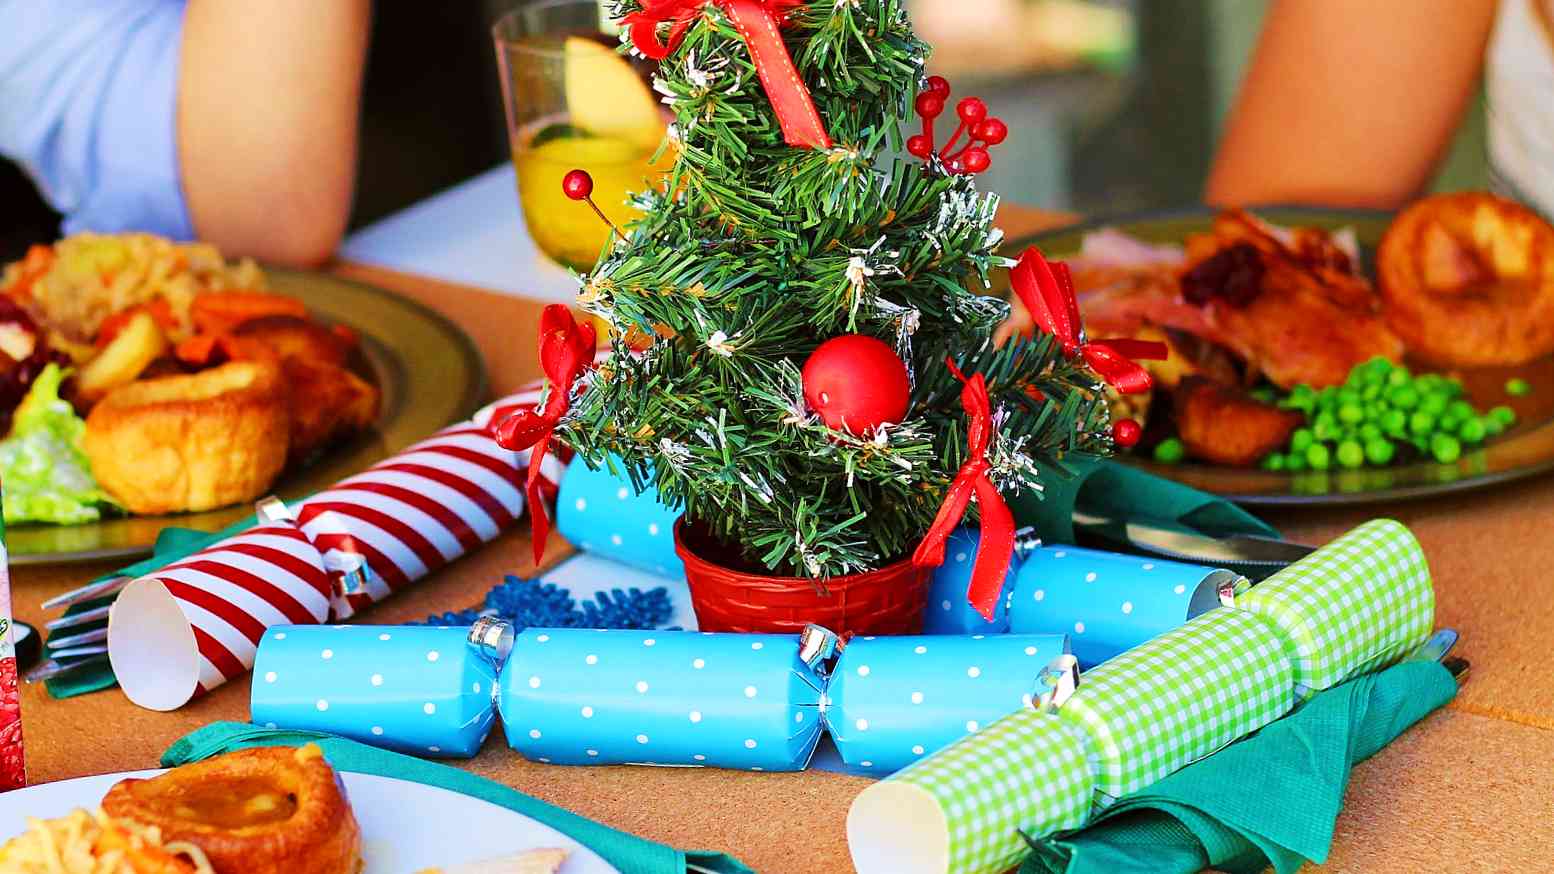 A 'Mit főzzek karácsonyra' cikk nyitóképe: Karácsonyi asztalon karácsonyi ételek